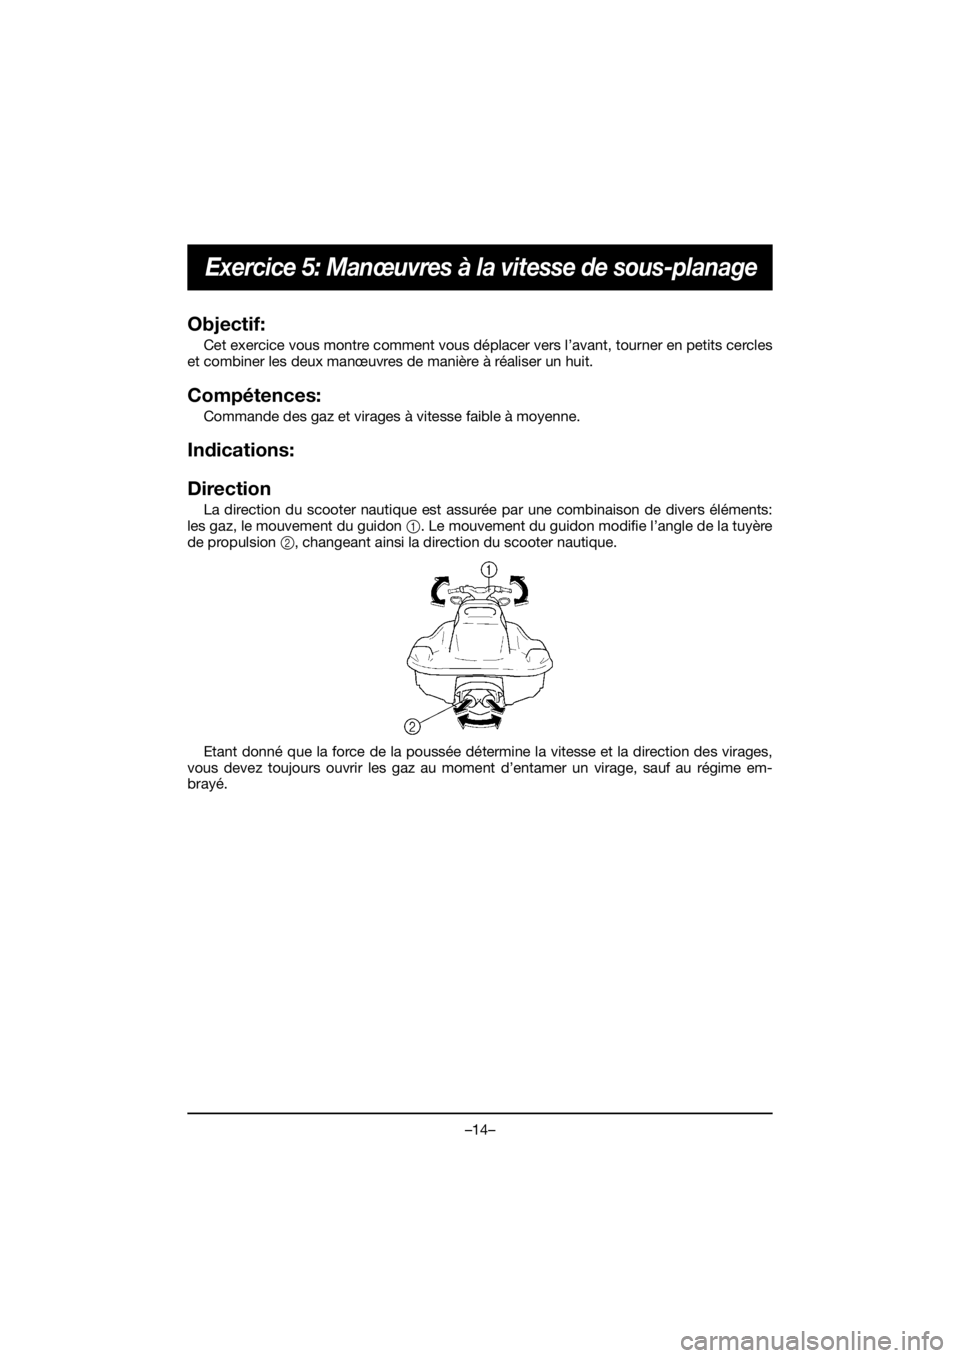 YAMAHA EX SPORT 2019  Manual de utilização (in Portuguese) –14–
Exercice 5: Manœuvres à la vitesse de sous-planage
Objectif: 
Cet exercice vous montre comment vous déplacer vers l’avant, tourner en petits cercles
et combiner les deux manœuvres de ma